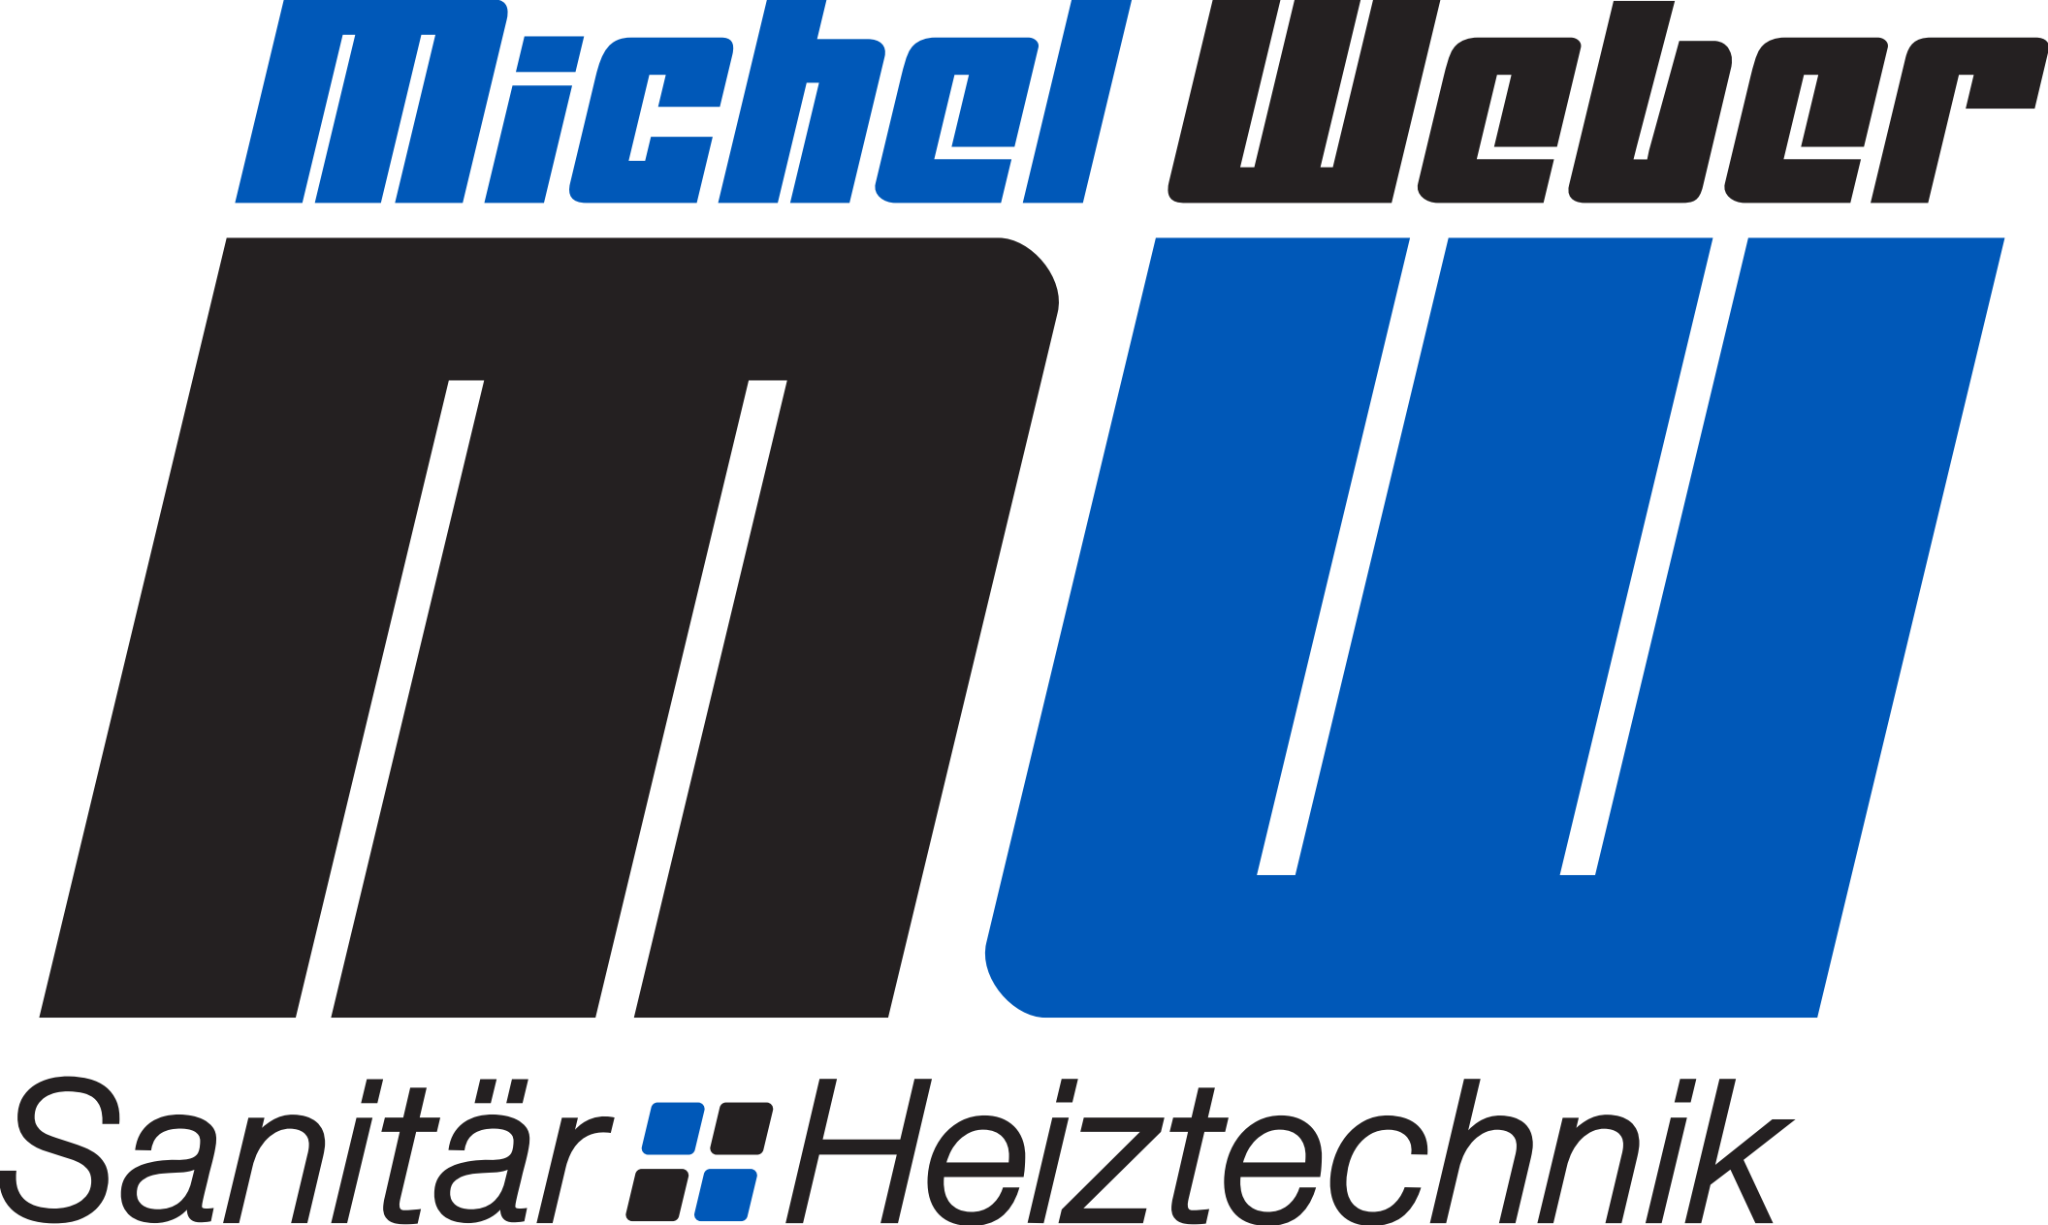 Michel & Weber AG